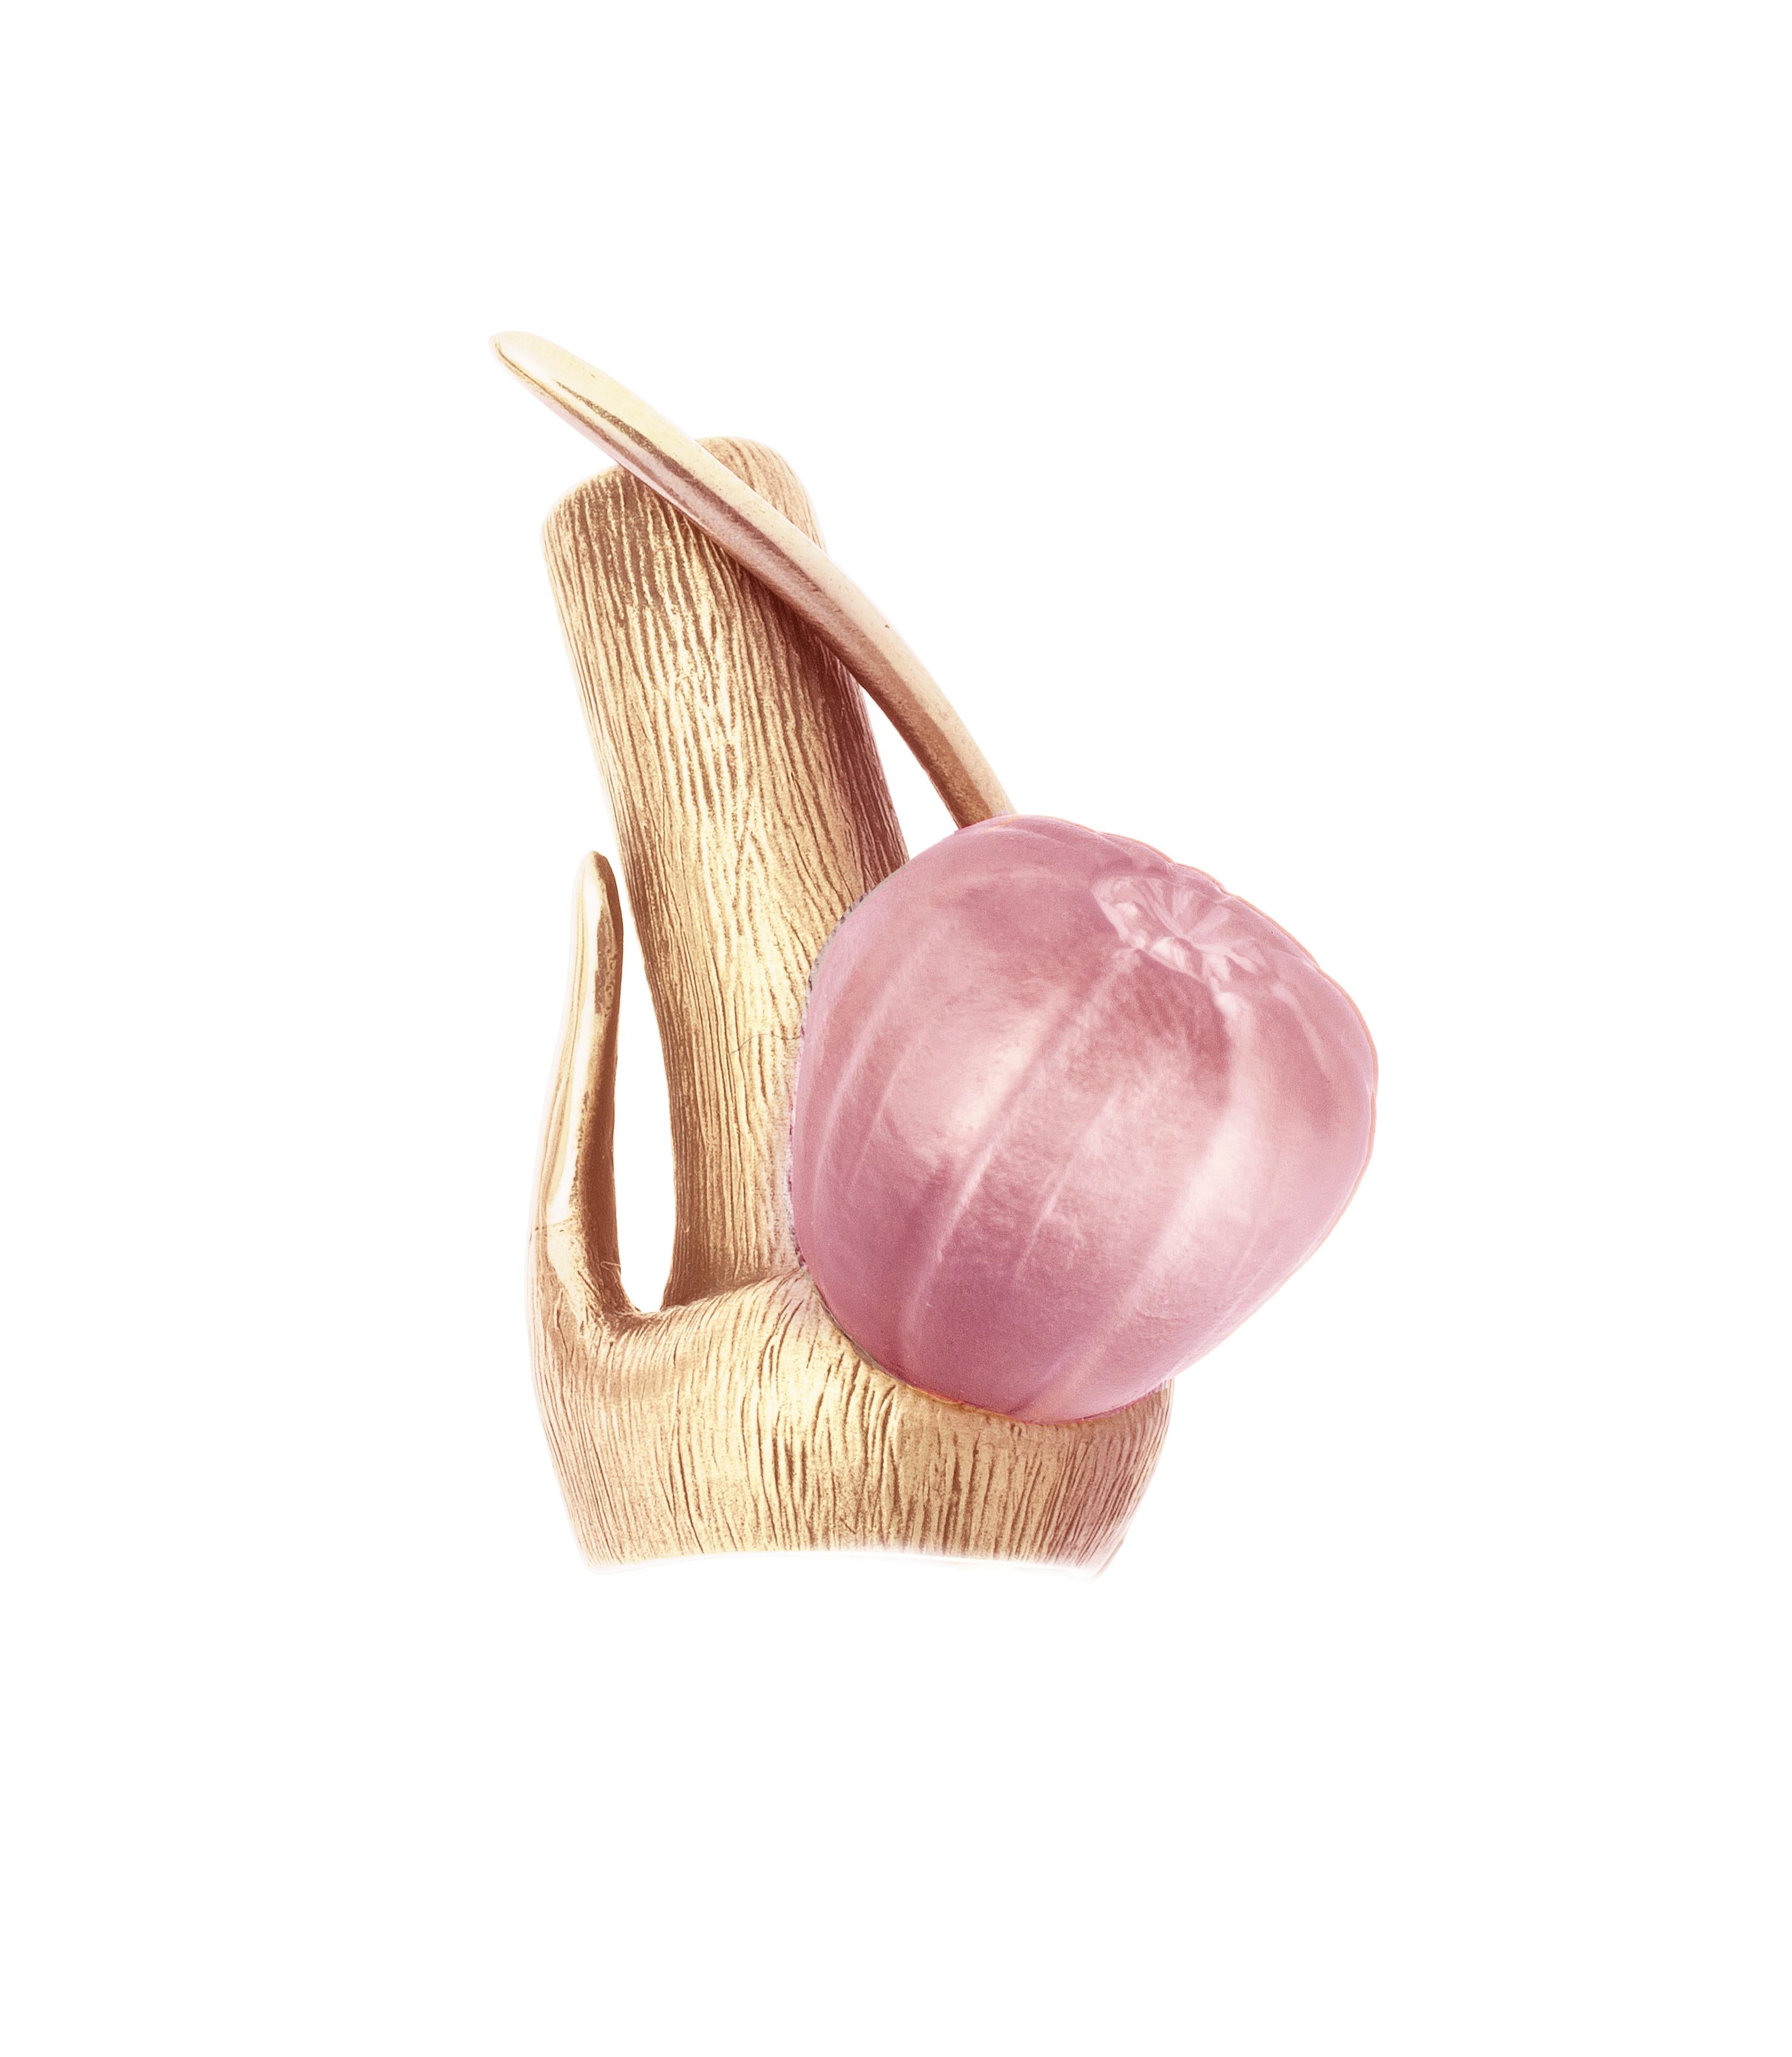 Ce collier pendentif Fig contemporain est en or rose 18 carats et présente un magnifique onyx rose. La collection a fait l'objet de critiques éditoriales de la part de Vogue UA et Harper's Bazaar UA.

Le fruit de la figue est une sculpture